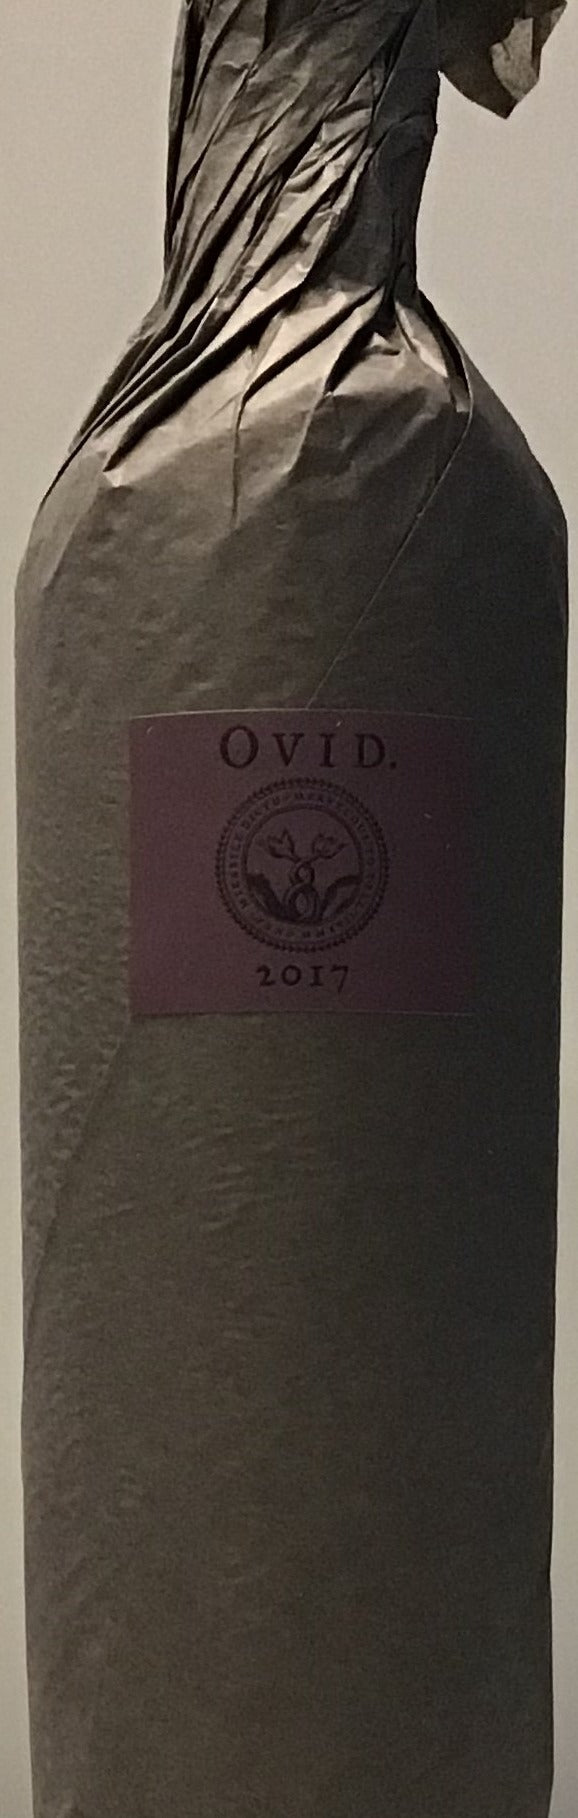 Ovid 'Hexameter' - 2017